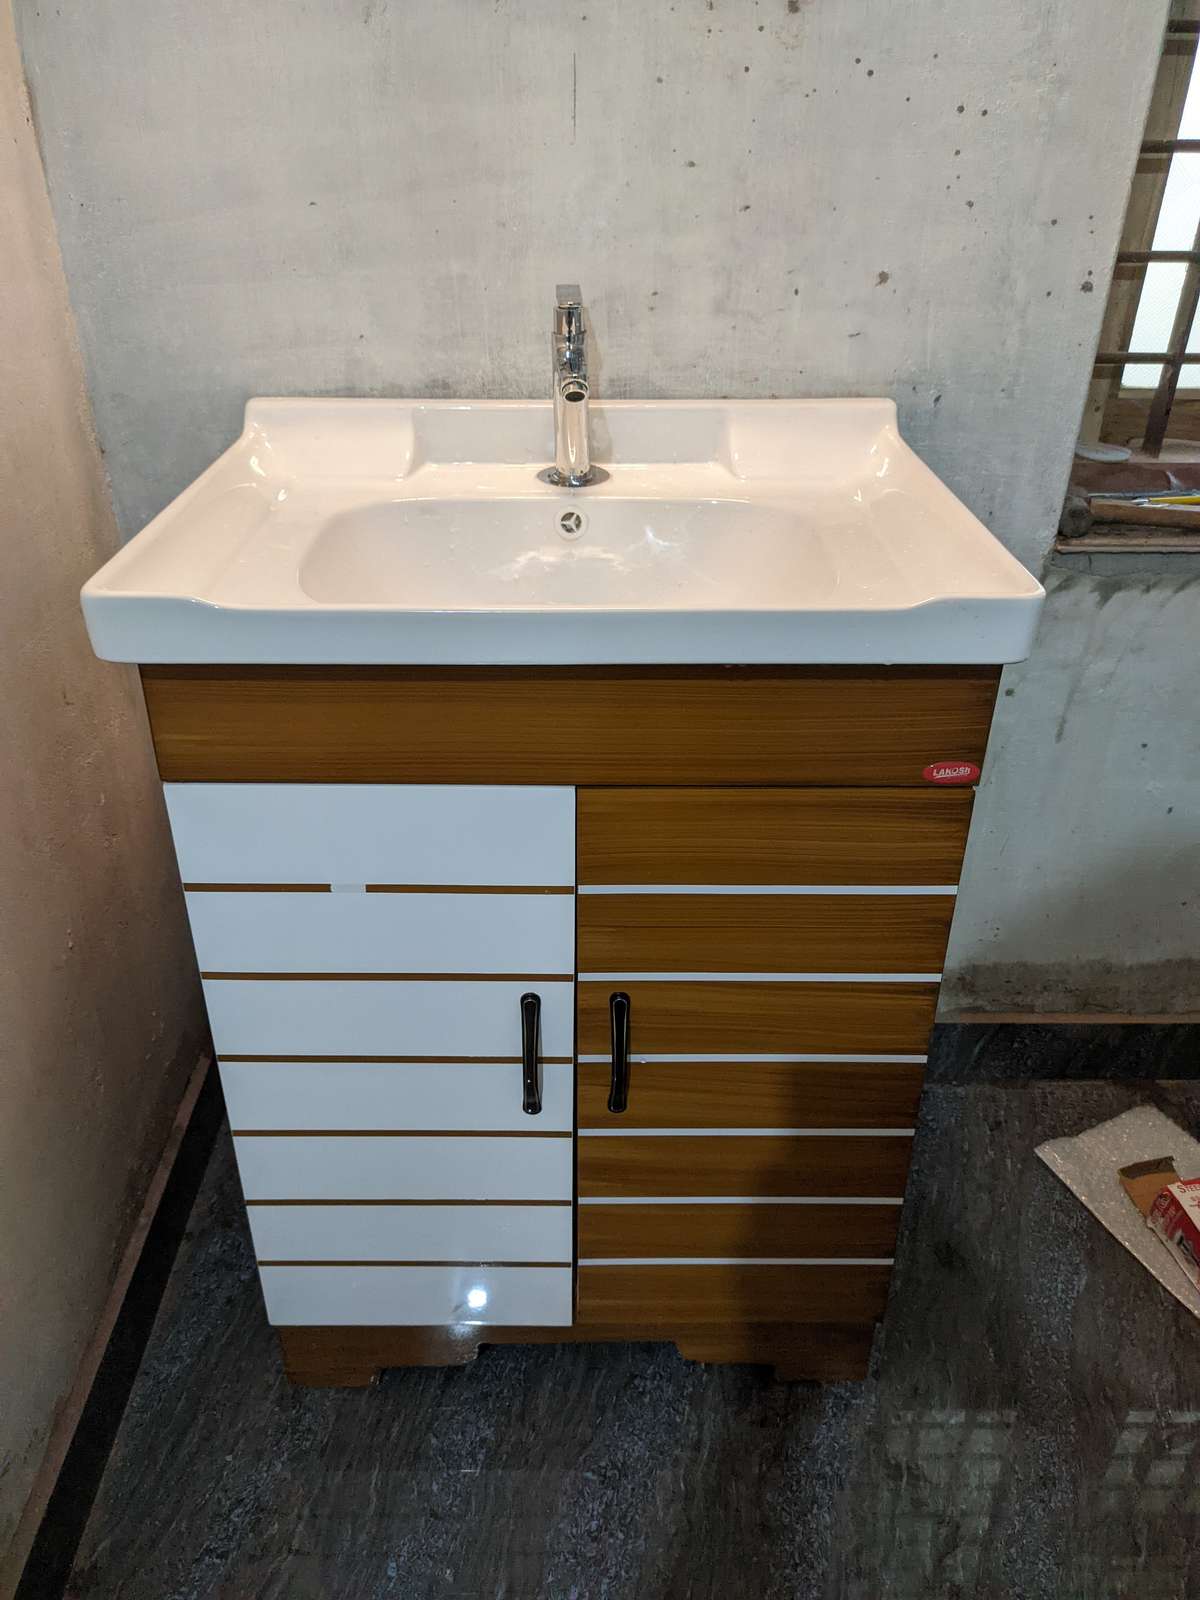 New , Box Type Wash Basin Fitting
#basin  #washbasinDesig  #washbasin